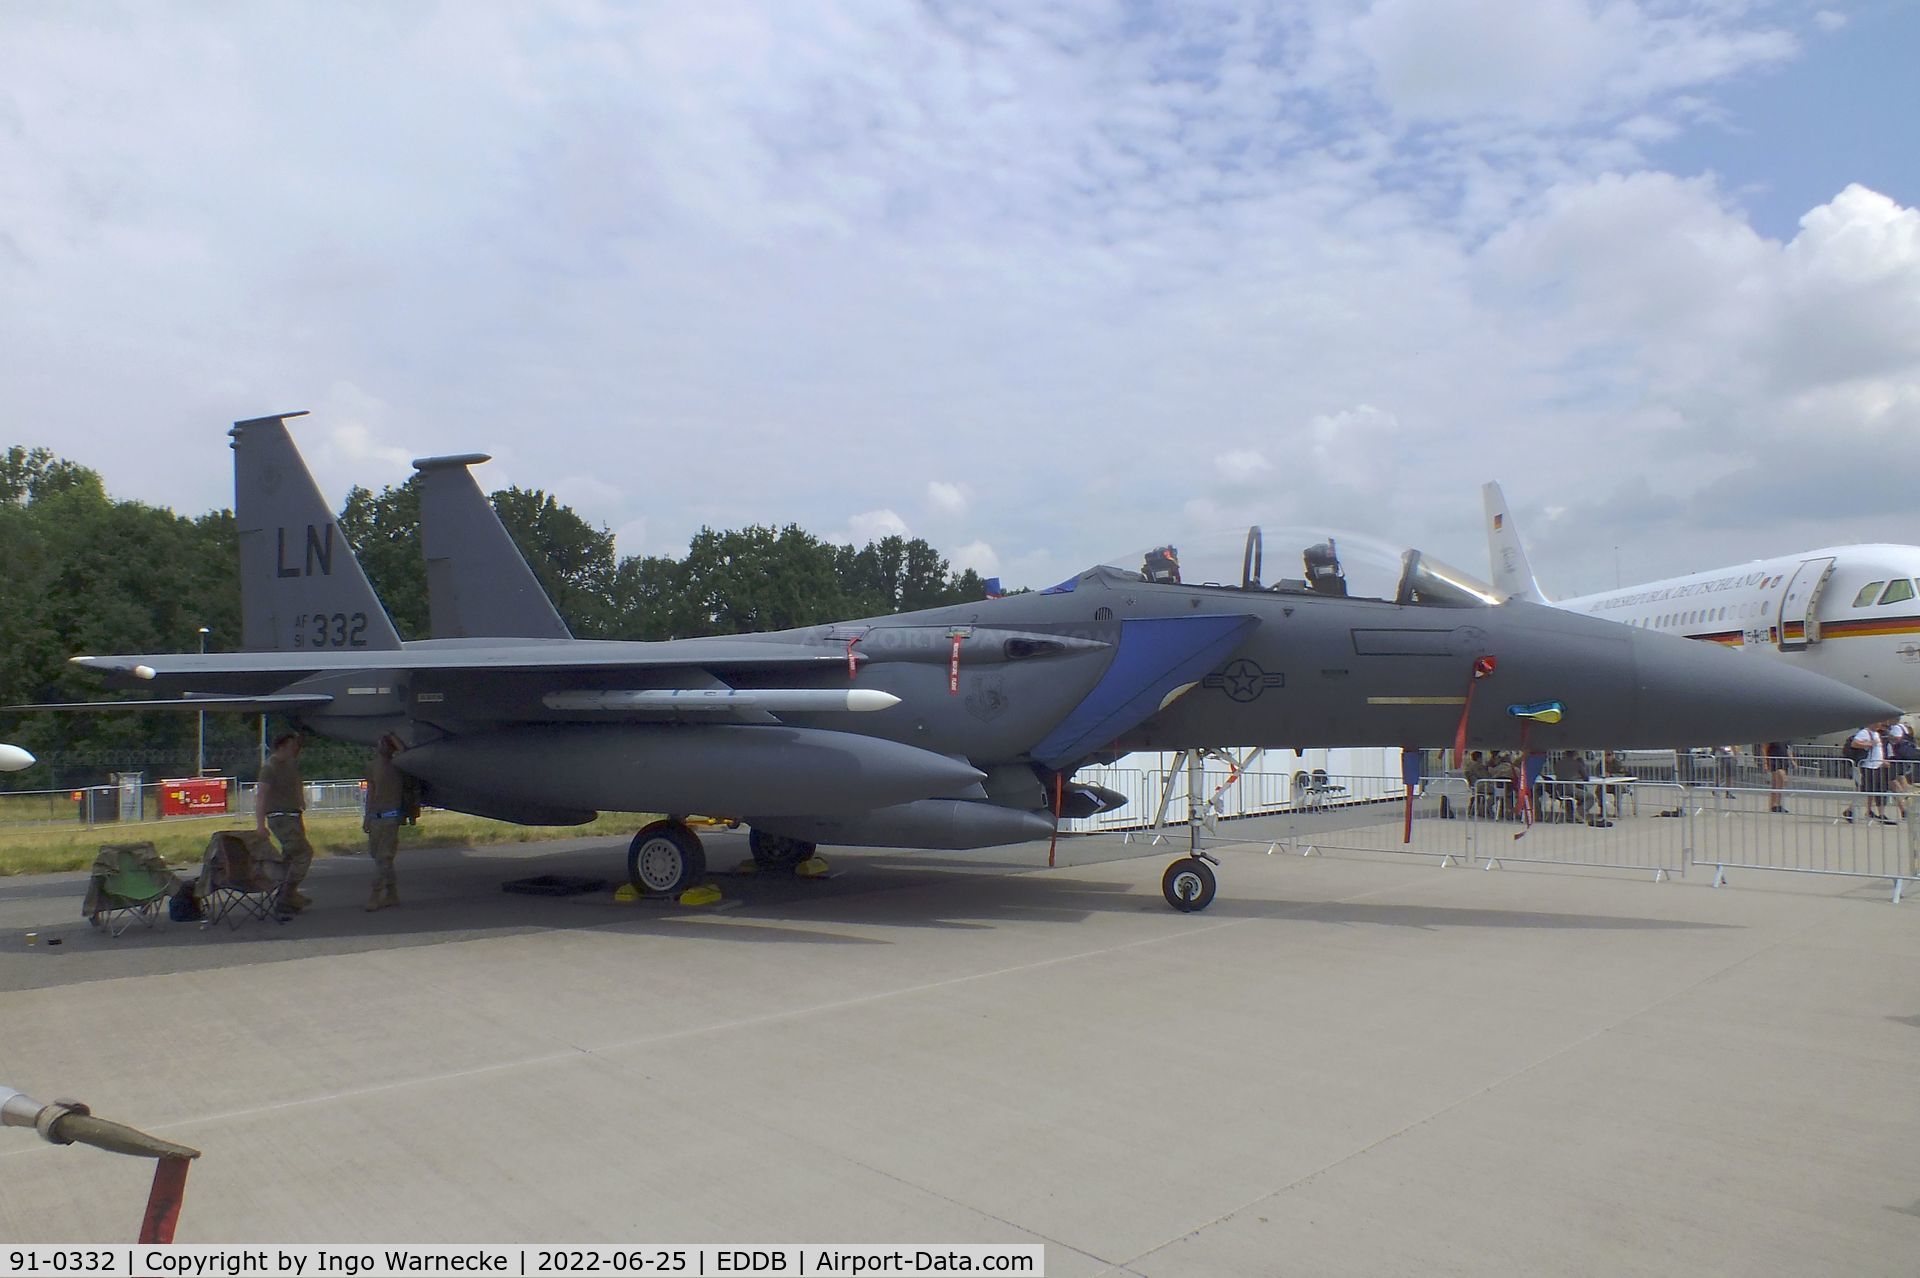 91-0332, 1991 McDonnell Douglas F-15E Strike Eagle C/N 1239/E197, McDonnell Douglas F-15E Strike Eagle of the USAF at ILA 2022, Berlin